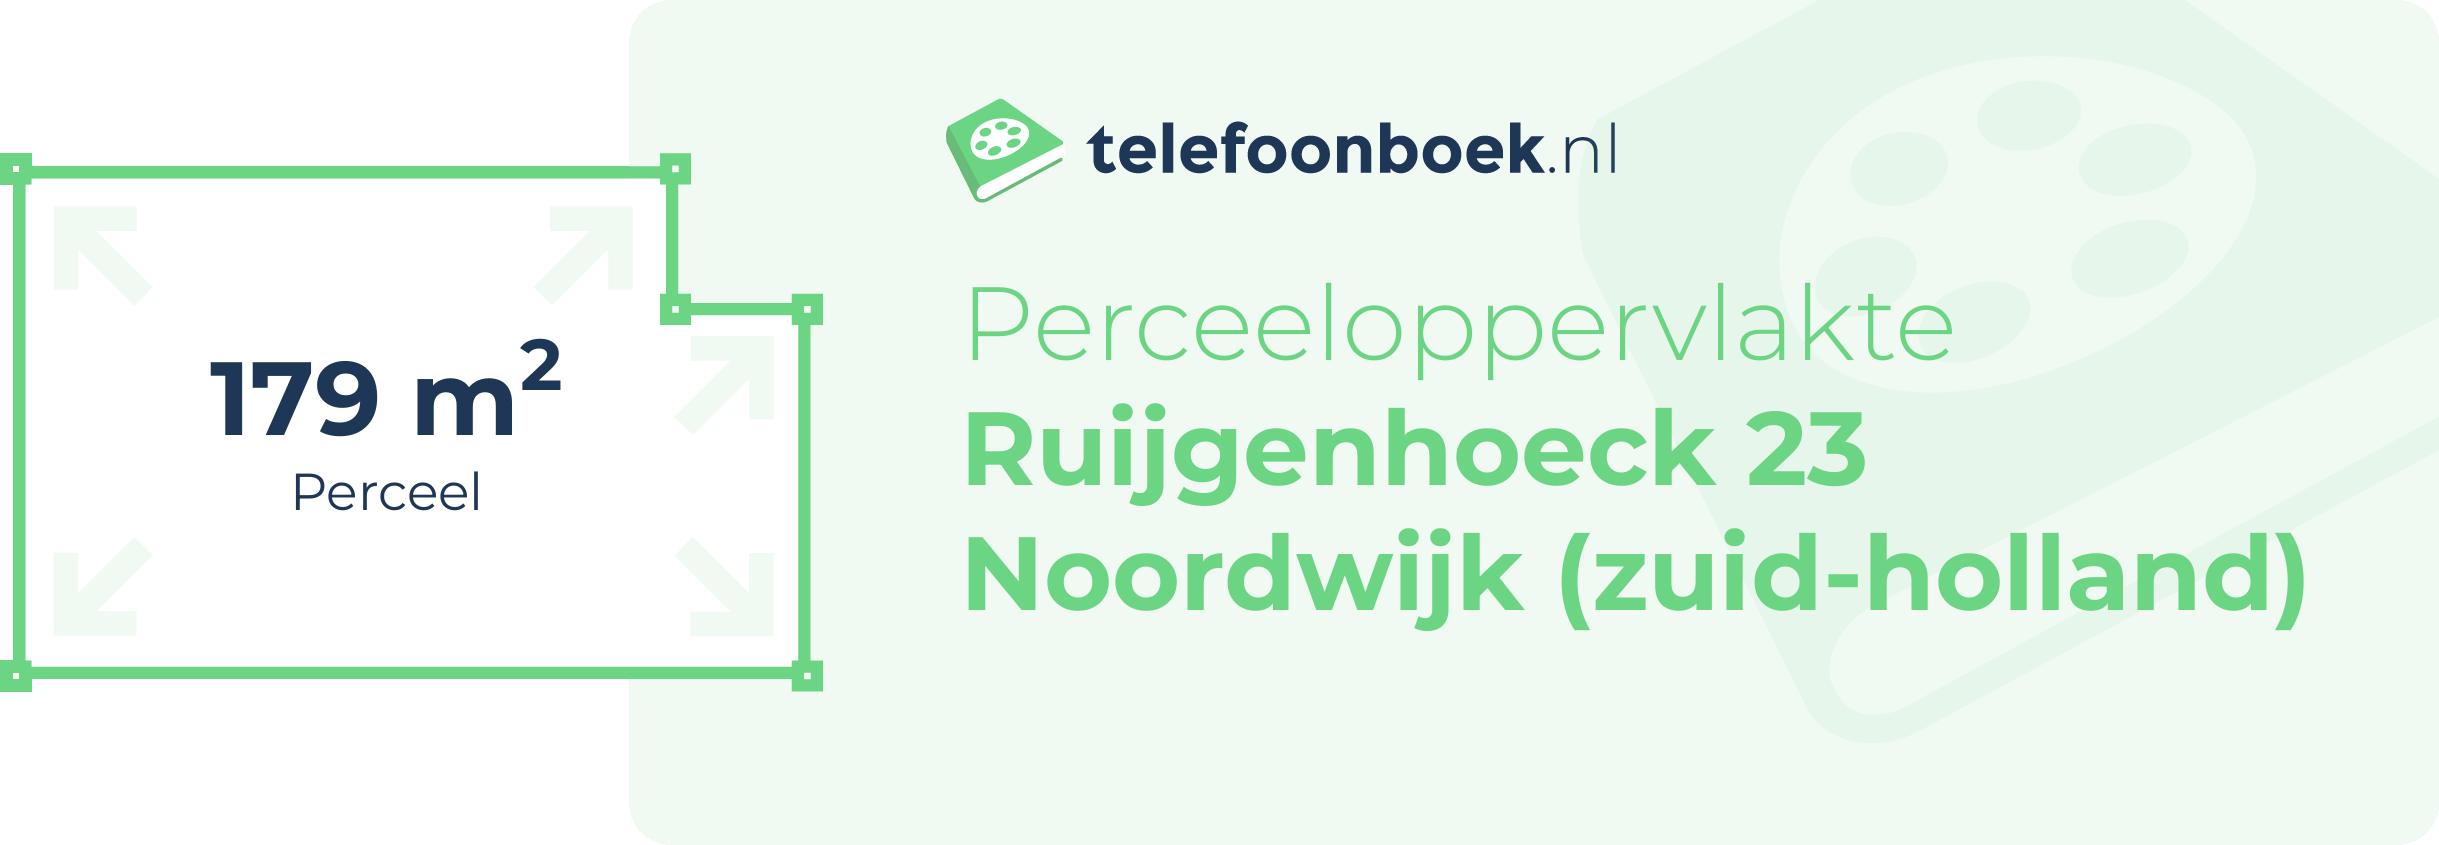 Perceeloppervlakte Ruijgenhoeck 23 Noordwijk (Zuid-Holland)